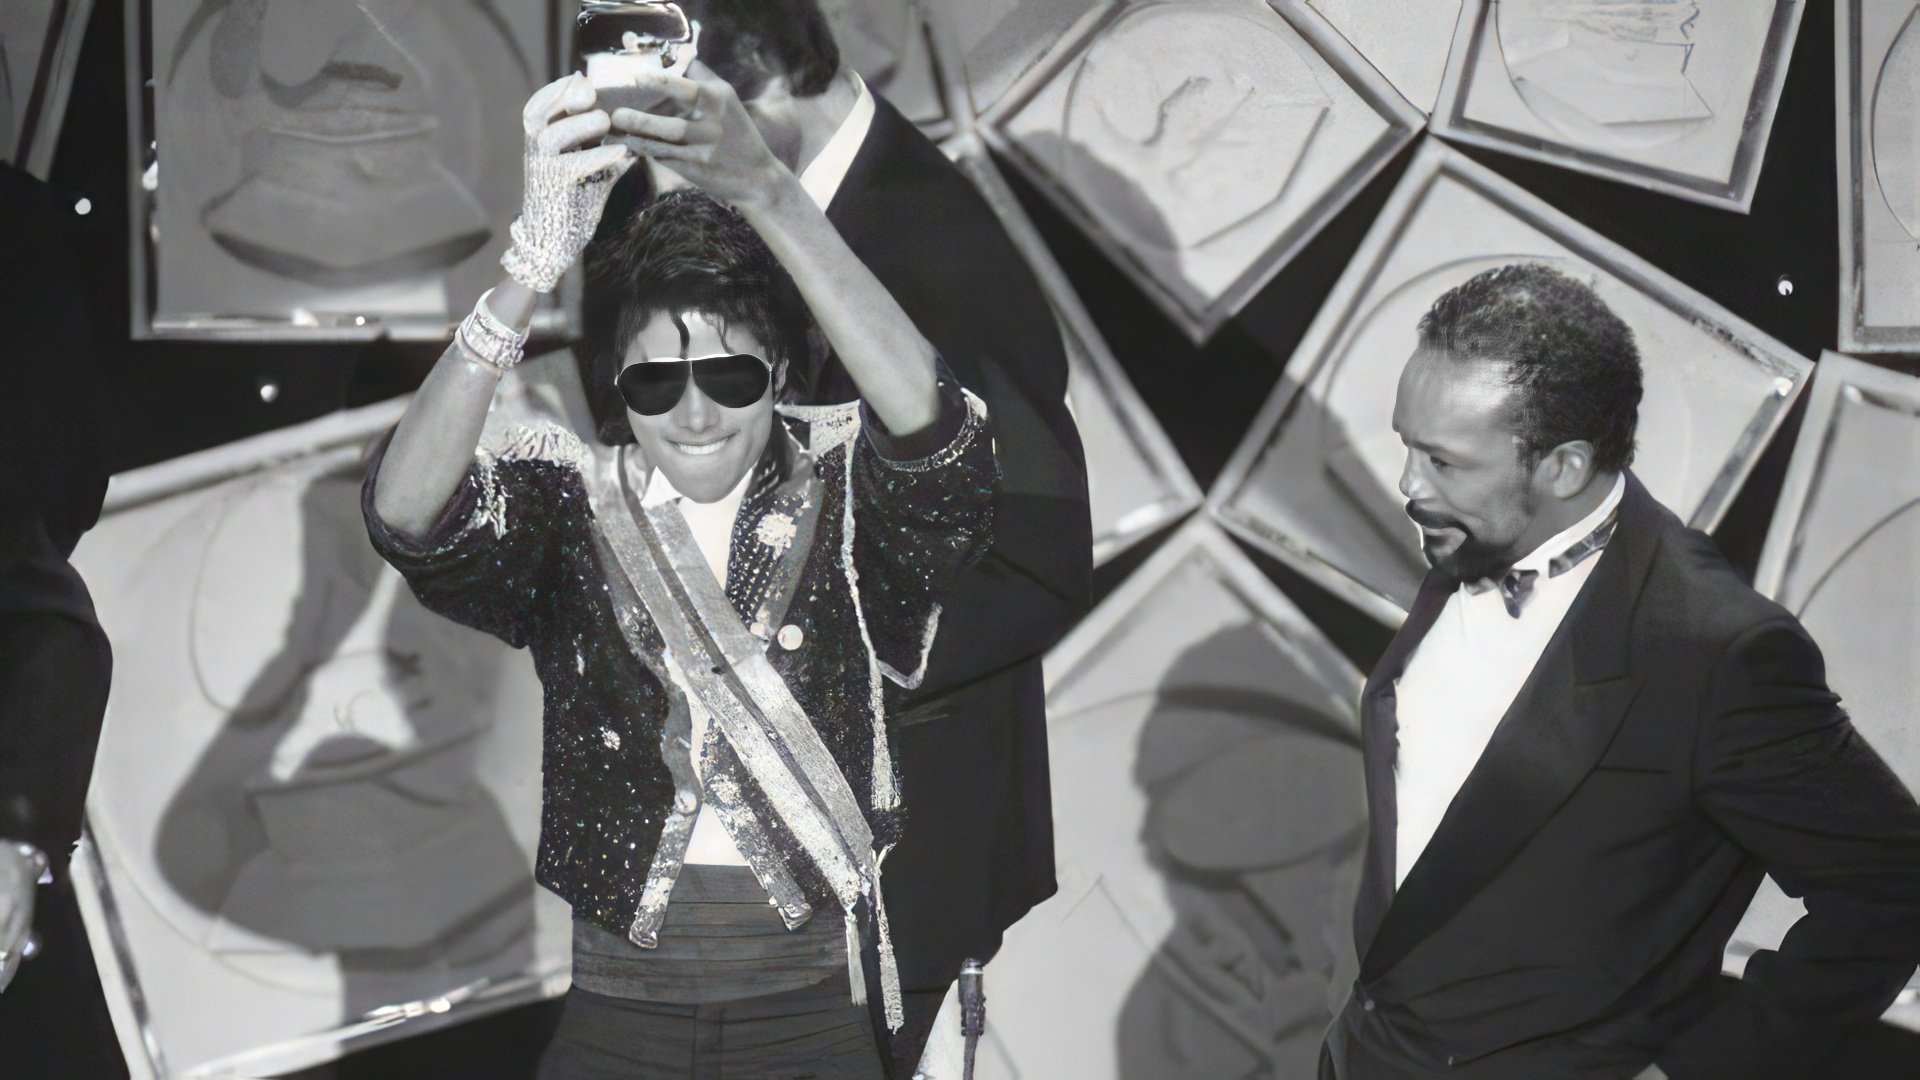 Producer Quincy Jones nurtured Michael Jackson's talent